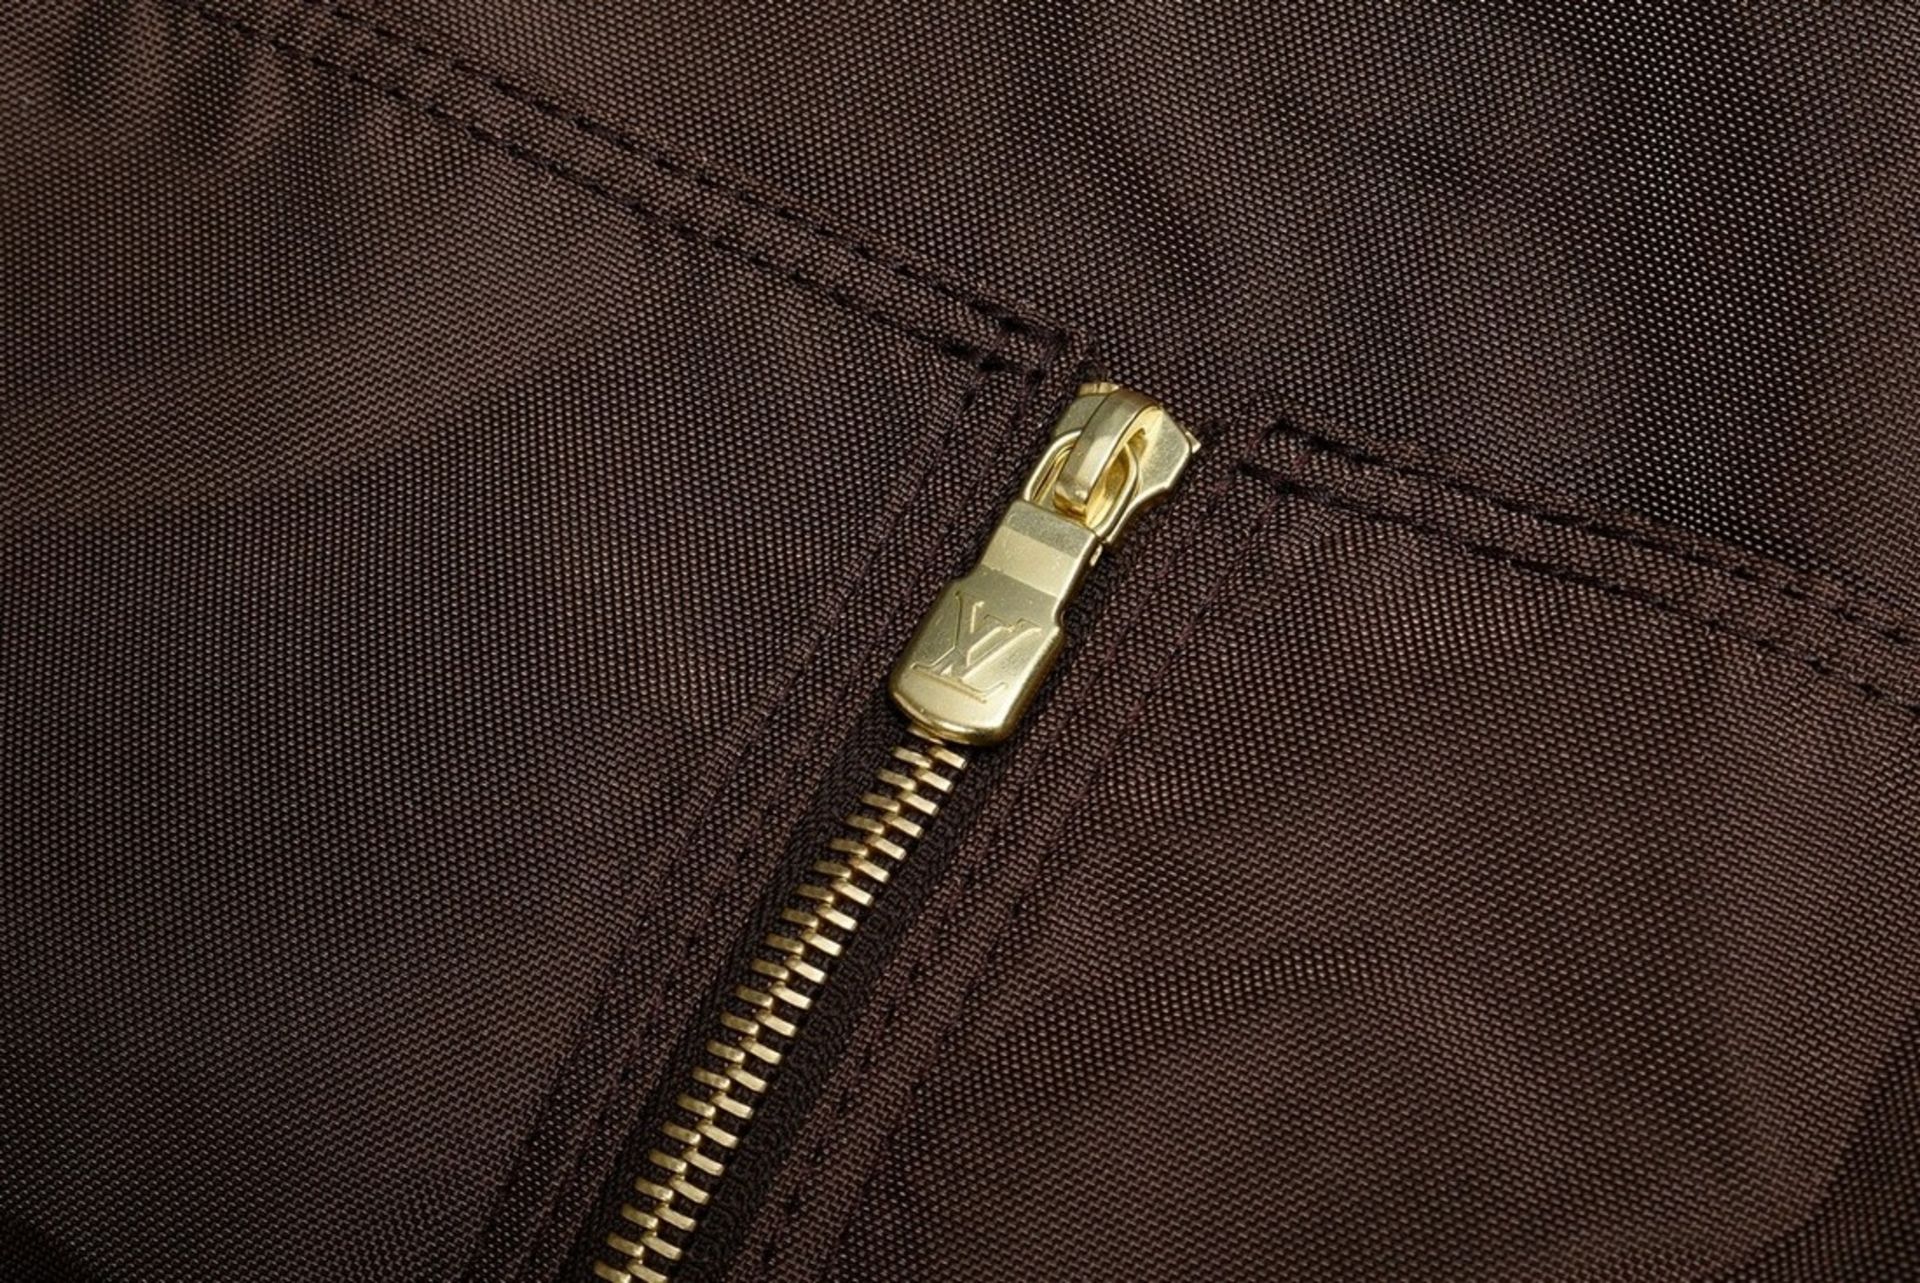 Dunkelbrauner Nylon Louis Vuitton Kleidersack mit heller Lederschlaufe und goldfarbenem Reißverschl - Bild 4 aus 4